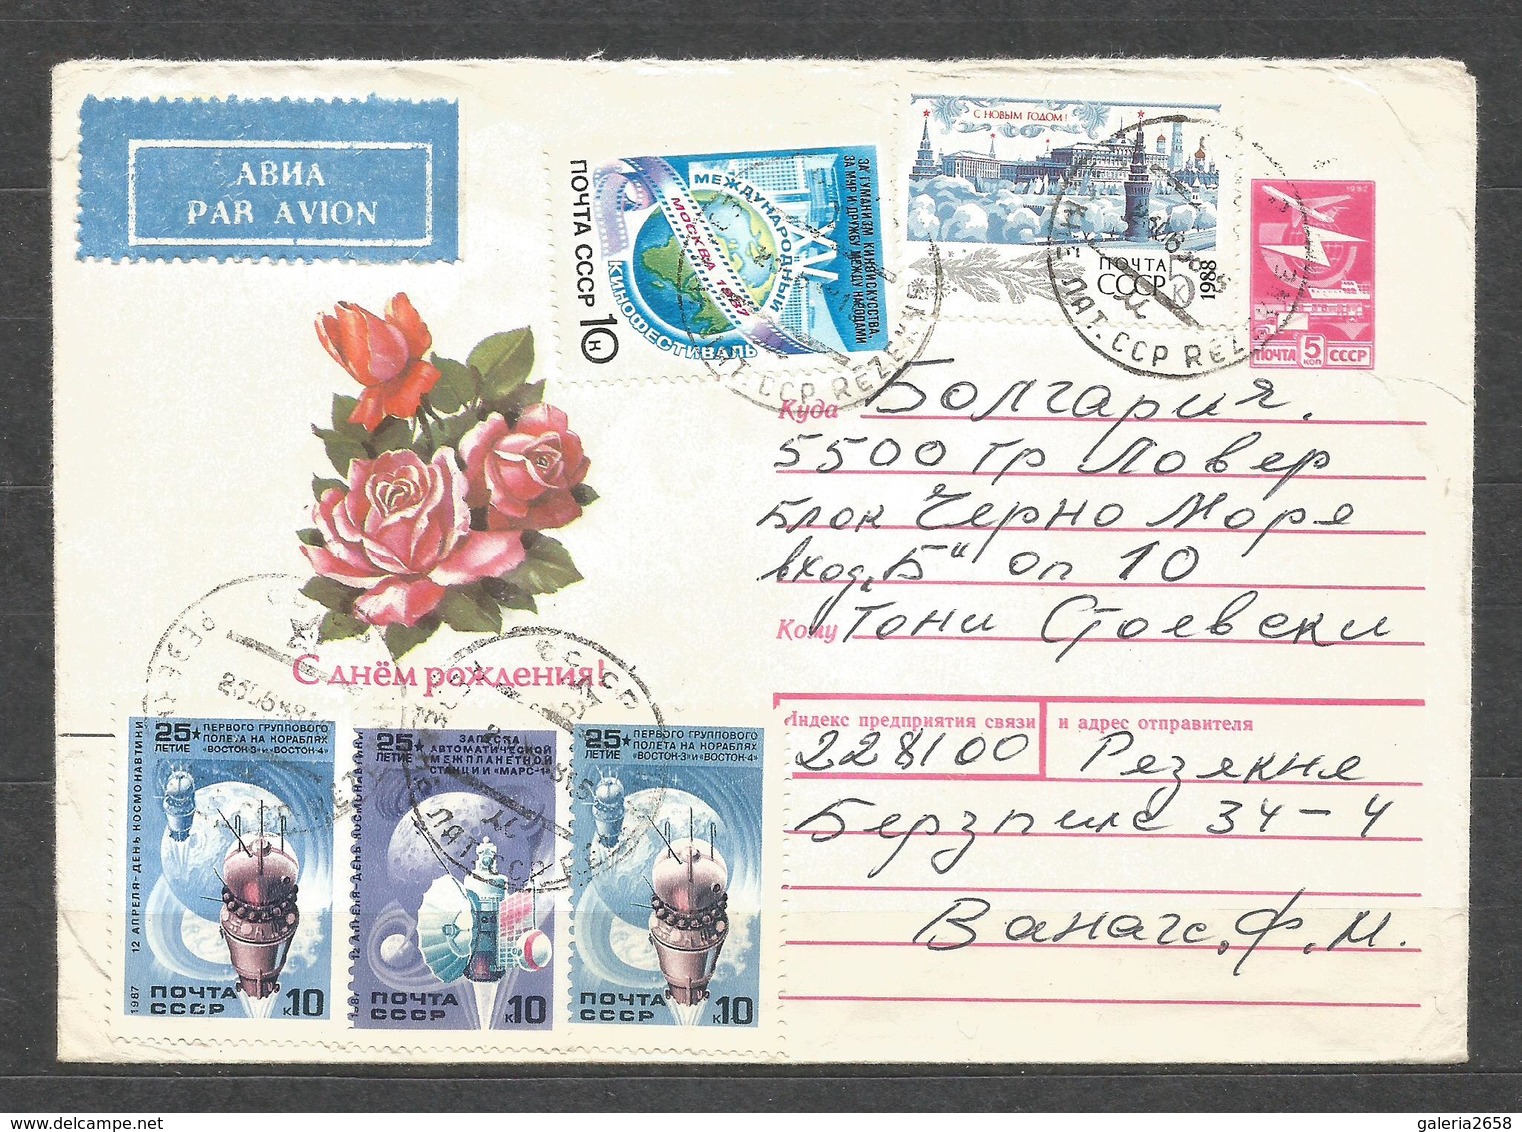 LATVIJA - REZEKNE  -  Traveled Letter To BULGARIA Since Communist Epoque  - D 4449 - Lettland